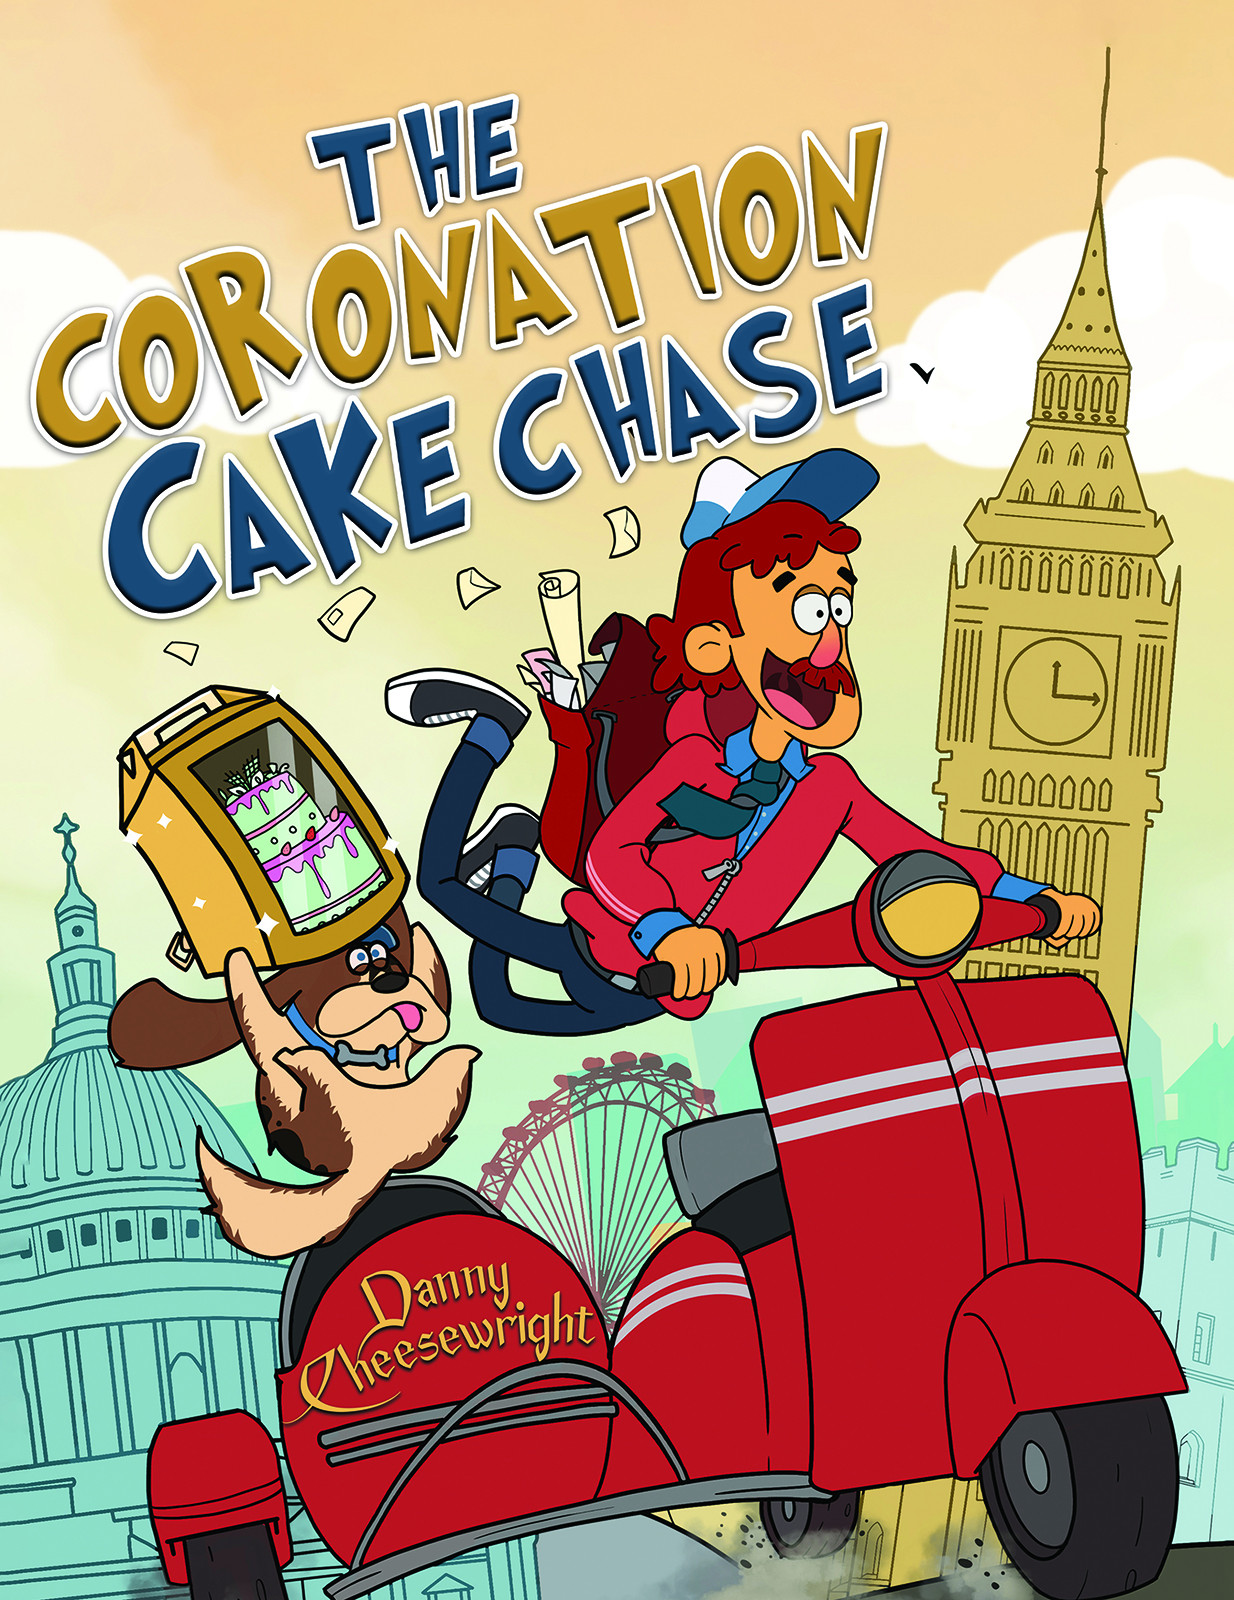 The Coronation Cake Chase